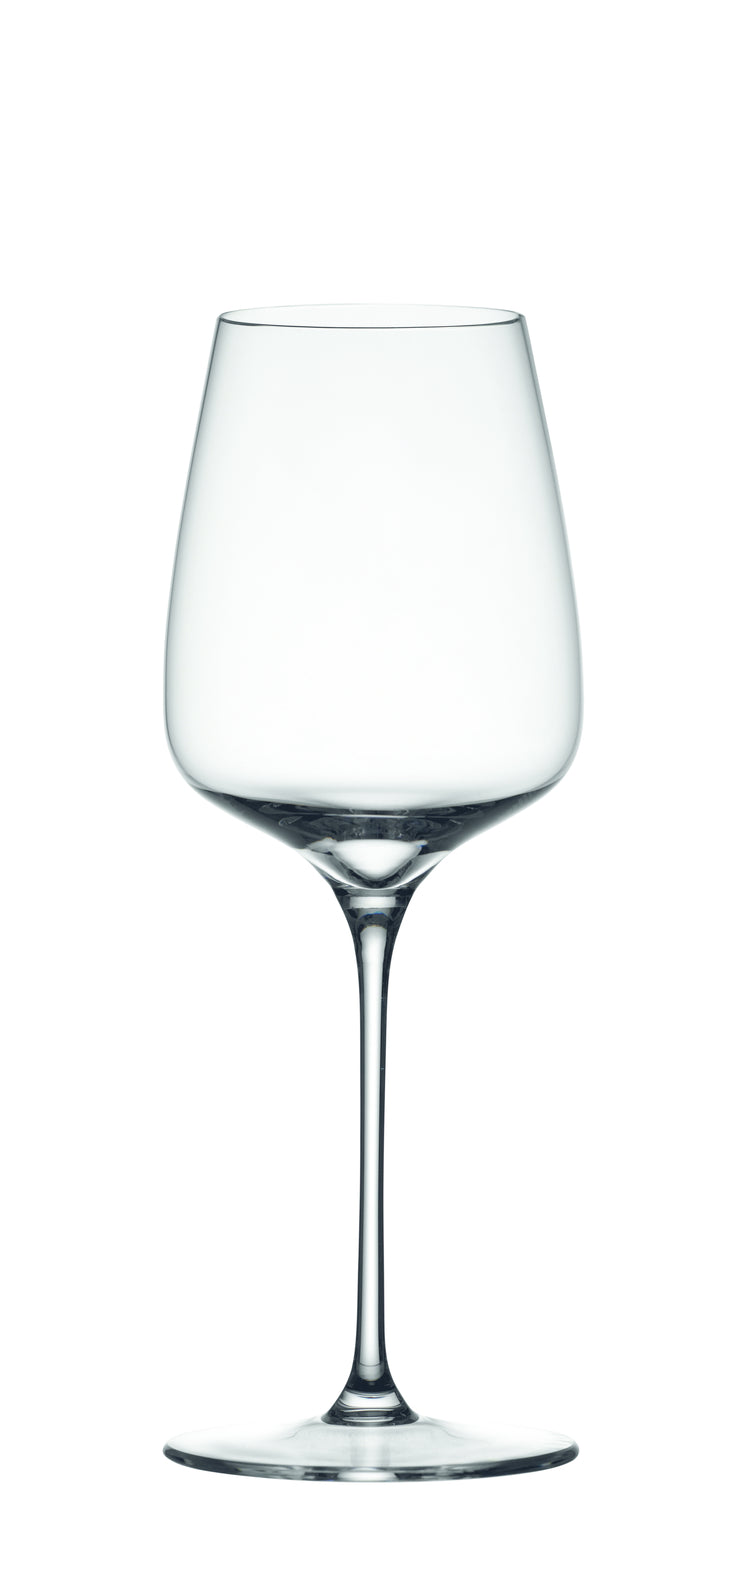 Set di 4 calici vino rosso in vetro cristallino. Dimensioni: mm 89 x 238 h - Capacità: 510 ml Lavabile in lavastoviglie. In negozio e online su tuttochic.it